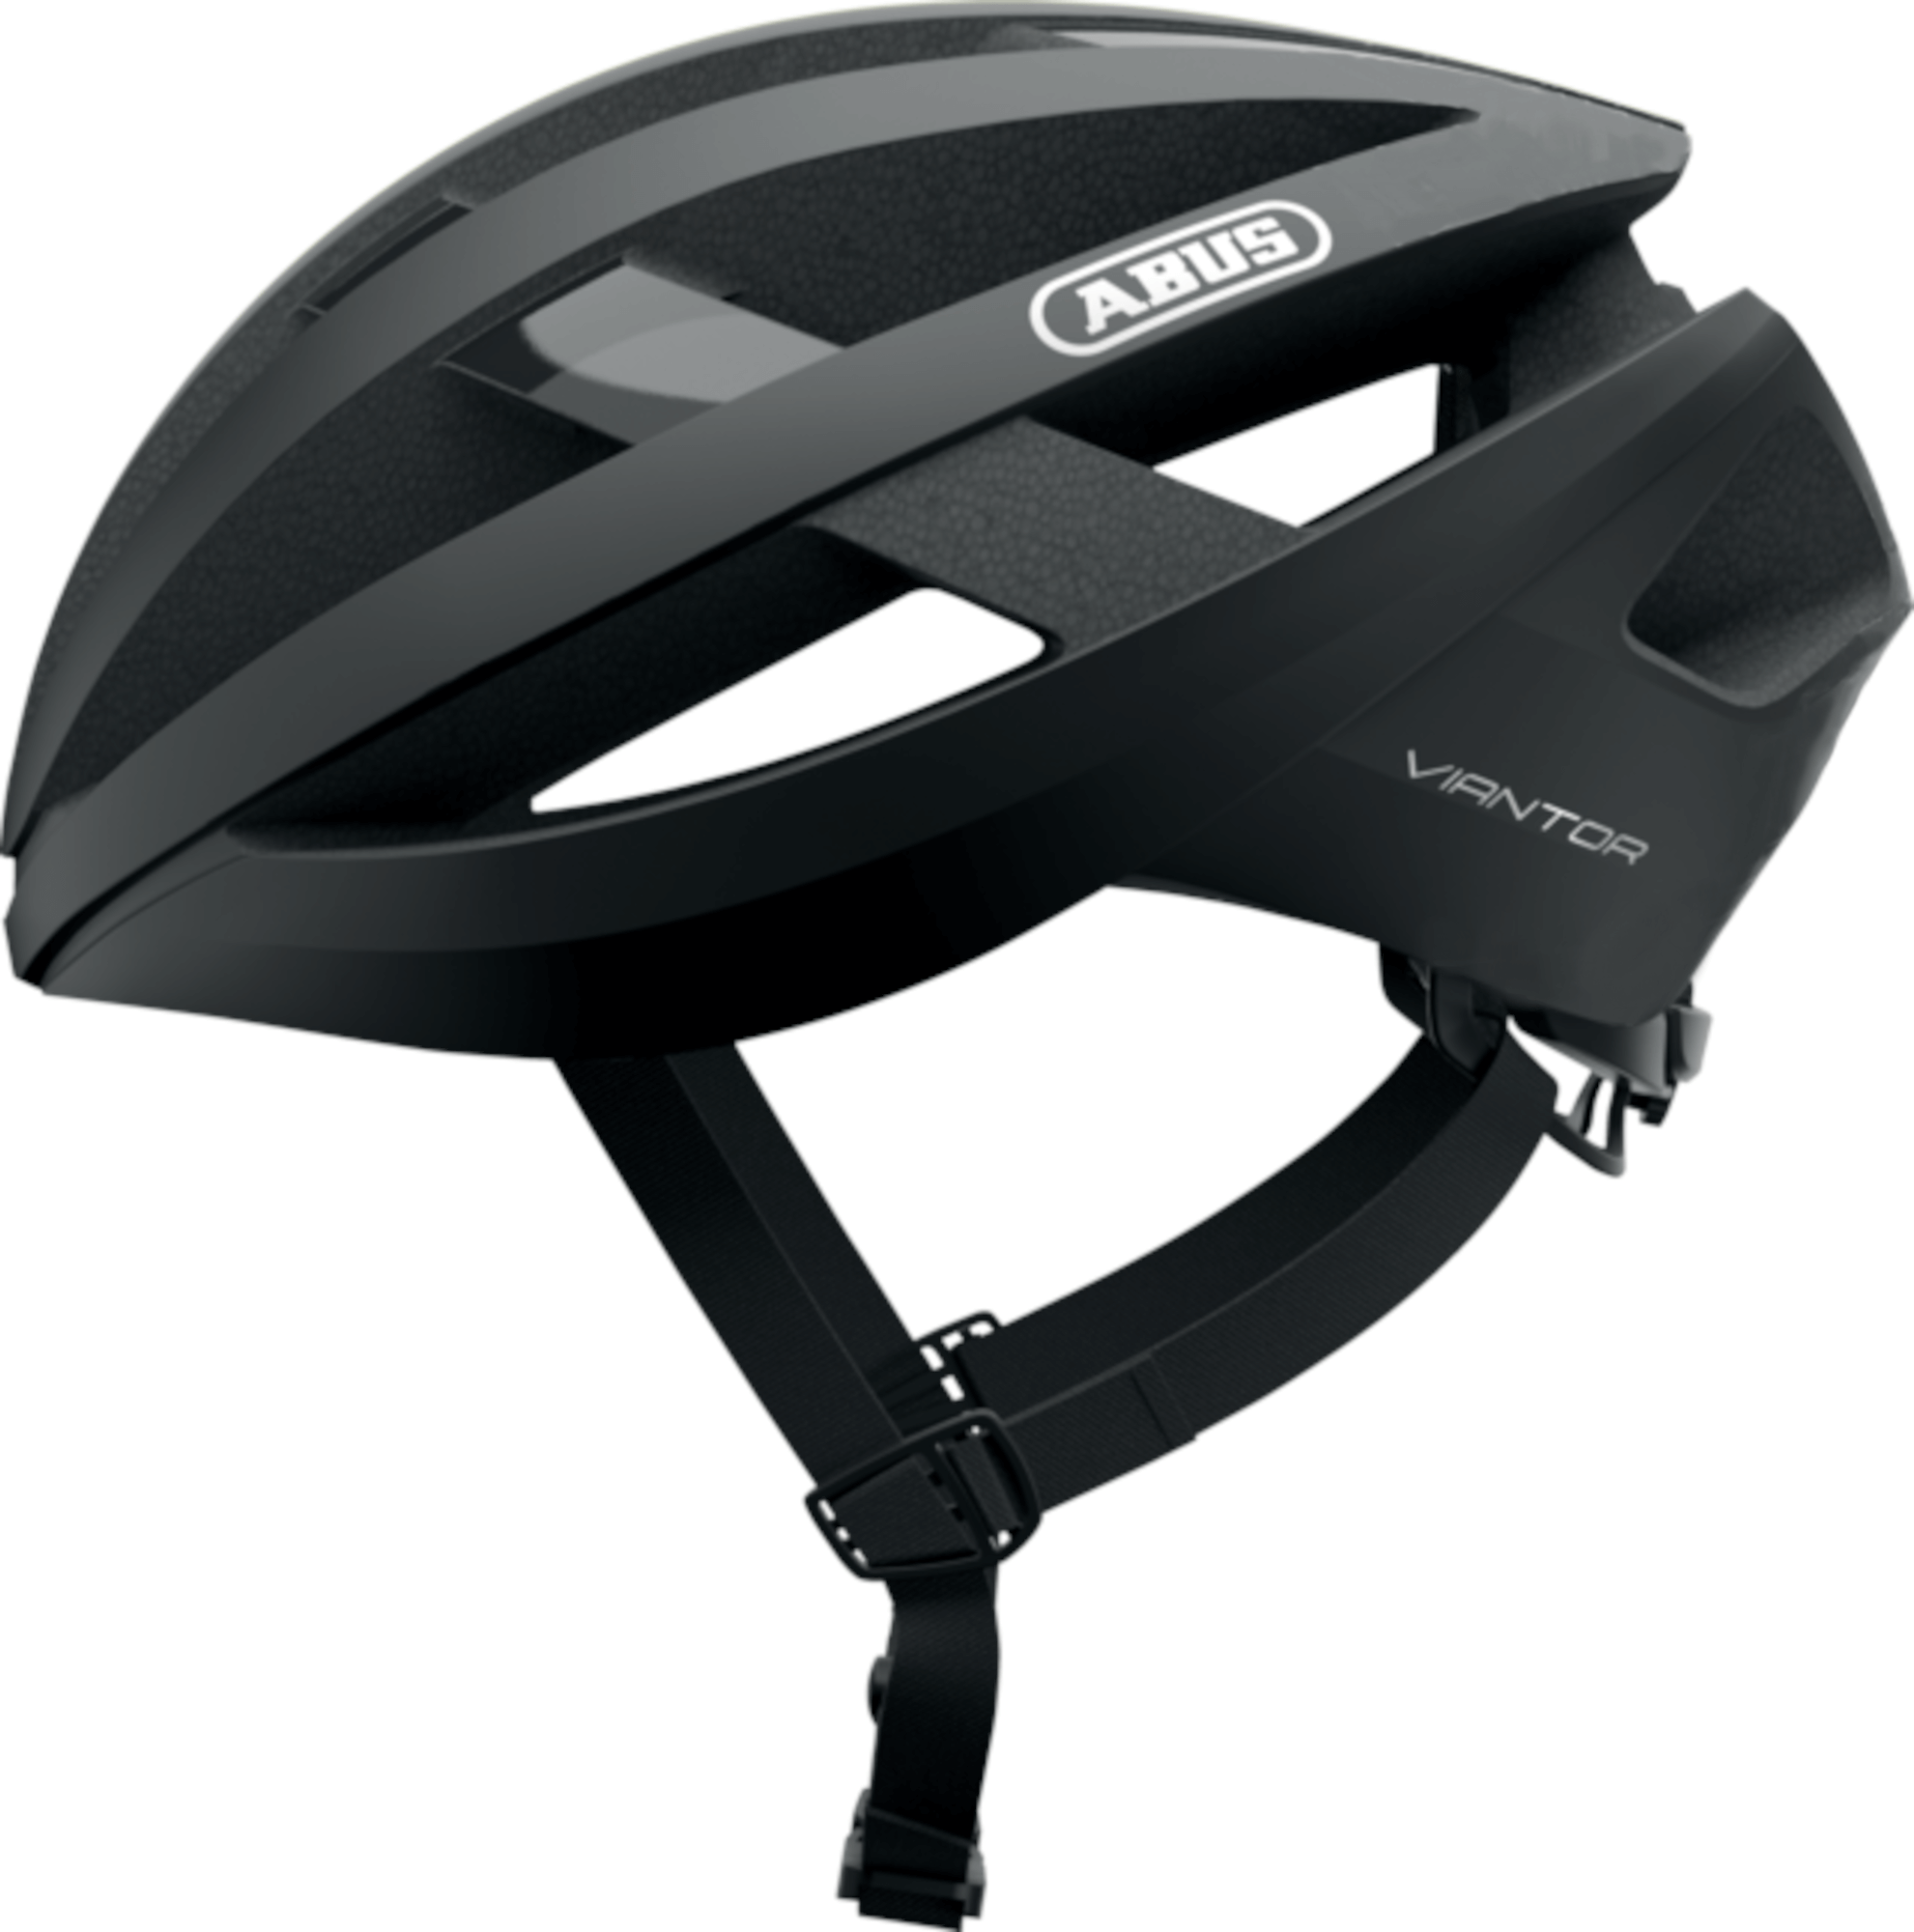 ABUS Viantor Road Bike Helmet